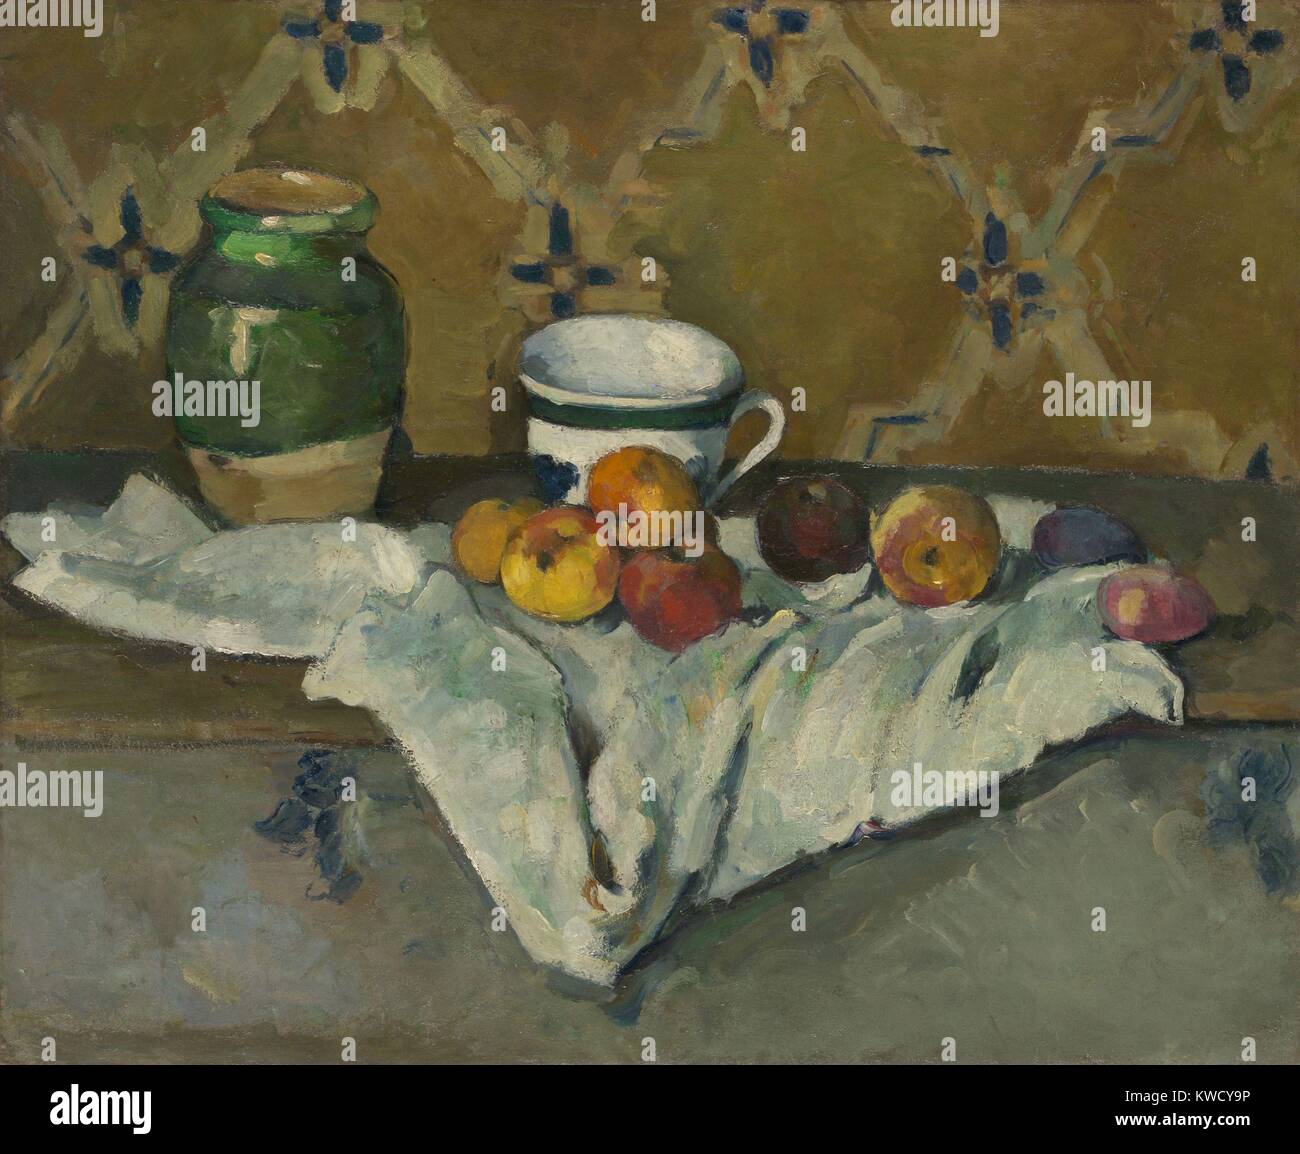 Ancora vita con i jar, coppa, e mele, di Paul Cezanne, 1877, francese Post-Impressionist pittura ad olio. Gli sfondi modello diagonale continua nelle pieghe del panno bianco (BSLOC 2017 5 21) Foto Stock